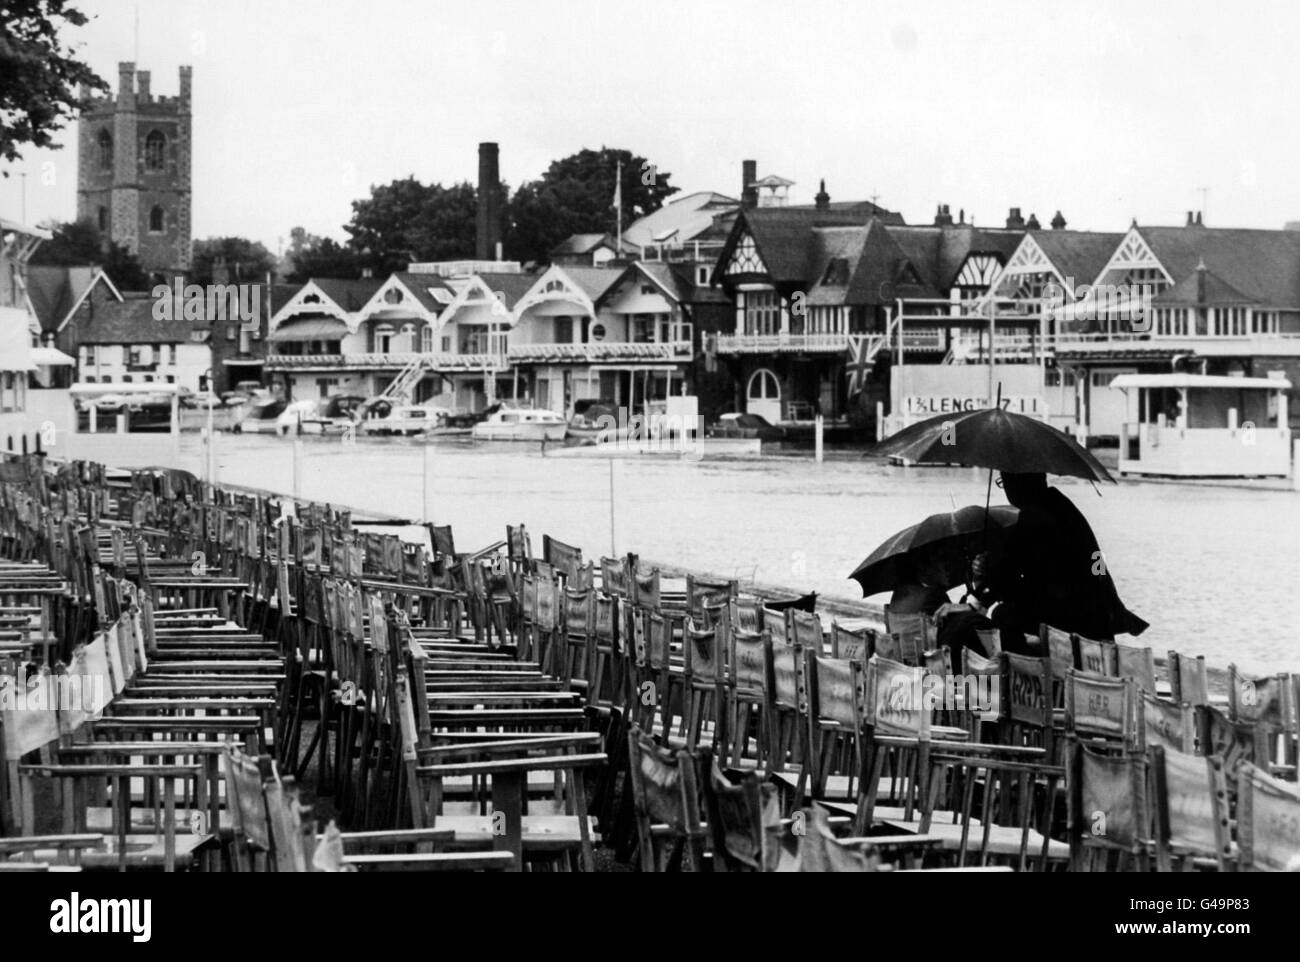 La vieille tradition de l'aviron à Henley-on-Thames souffrait de la tradition anglaise encore plus ancienne ... la pluie. Malgré cela, la course a été lancée Banque D'Images